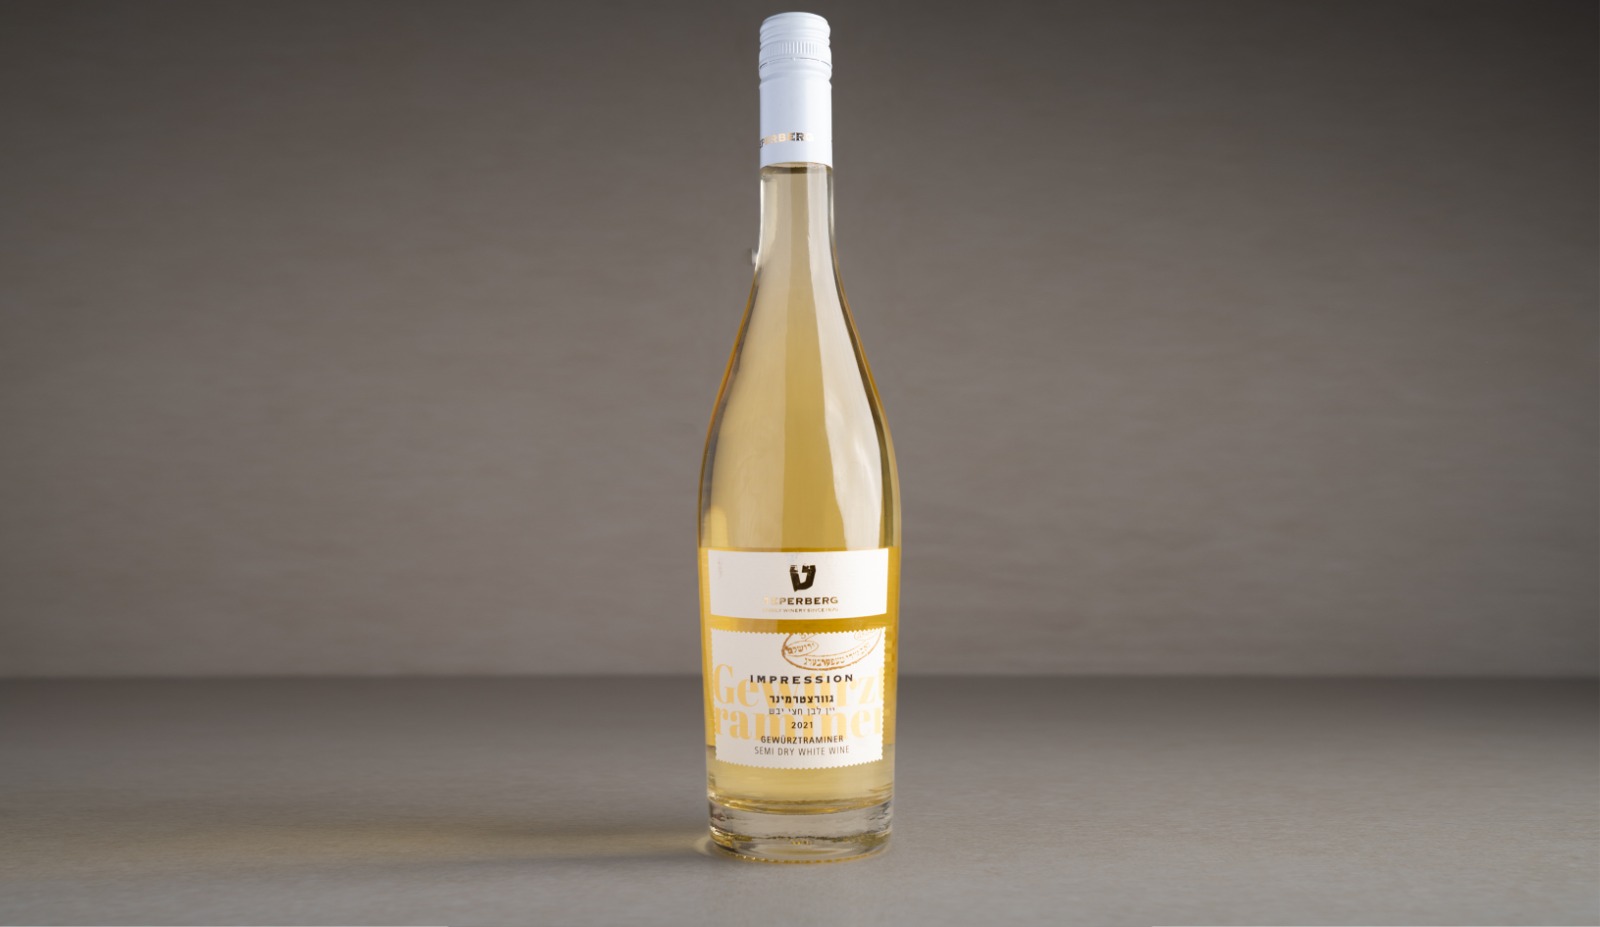 יין לבן חצי יבש "טפרברג" גוורצטרמינר 2021